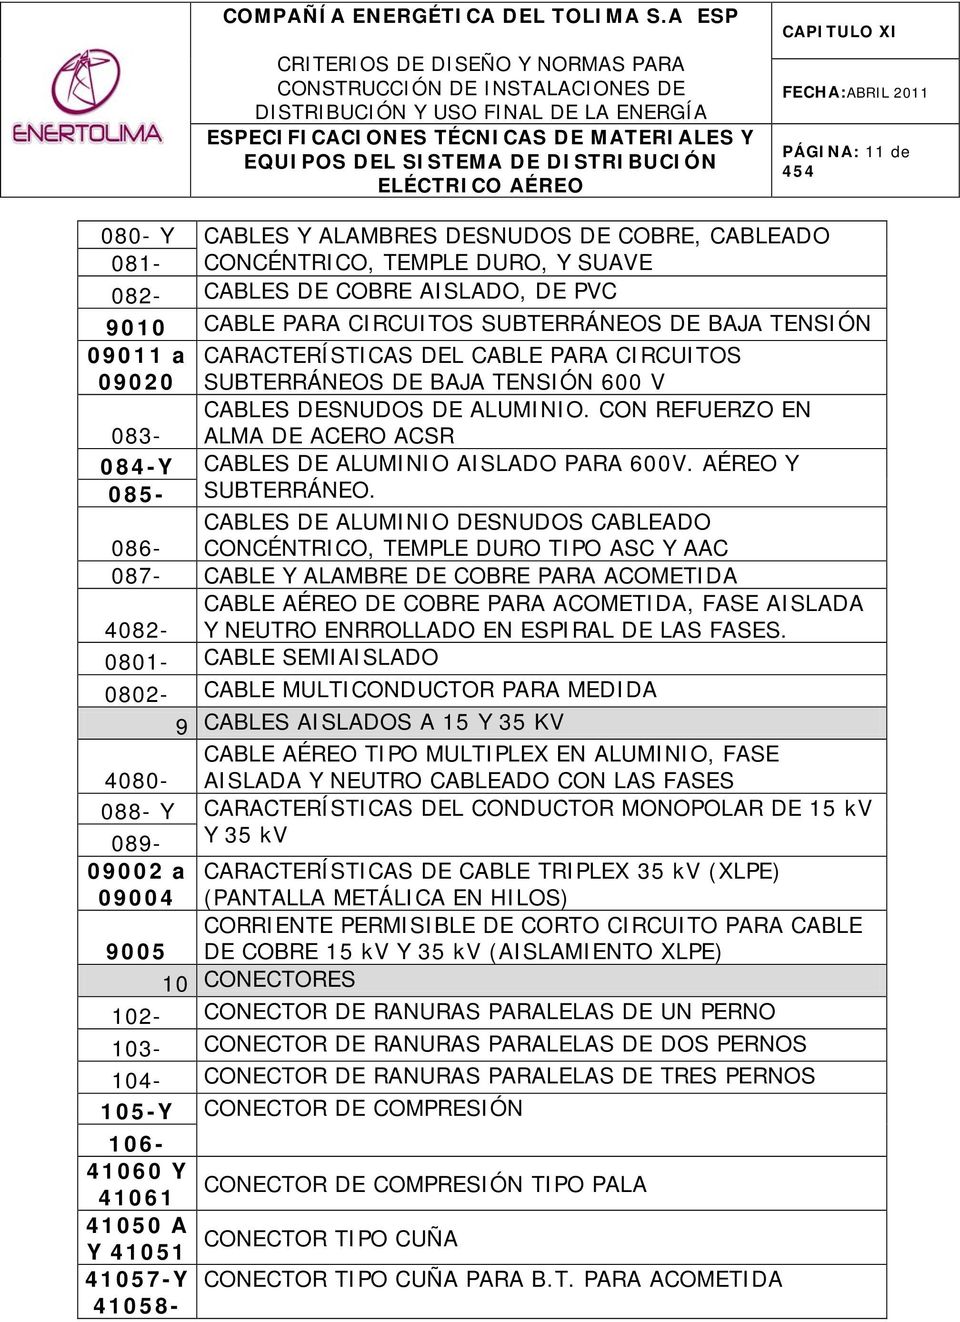 CON REFUERZO EN 083- ALMA DE ACERO ACSR 084-Y CABLES DE ALUMINIO AISLADO PARA 600V. AÉREO Y 085- SUBTERRÁNEO.